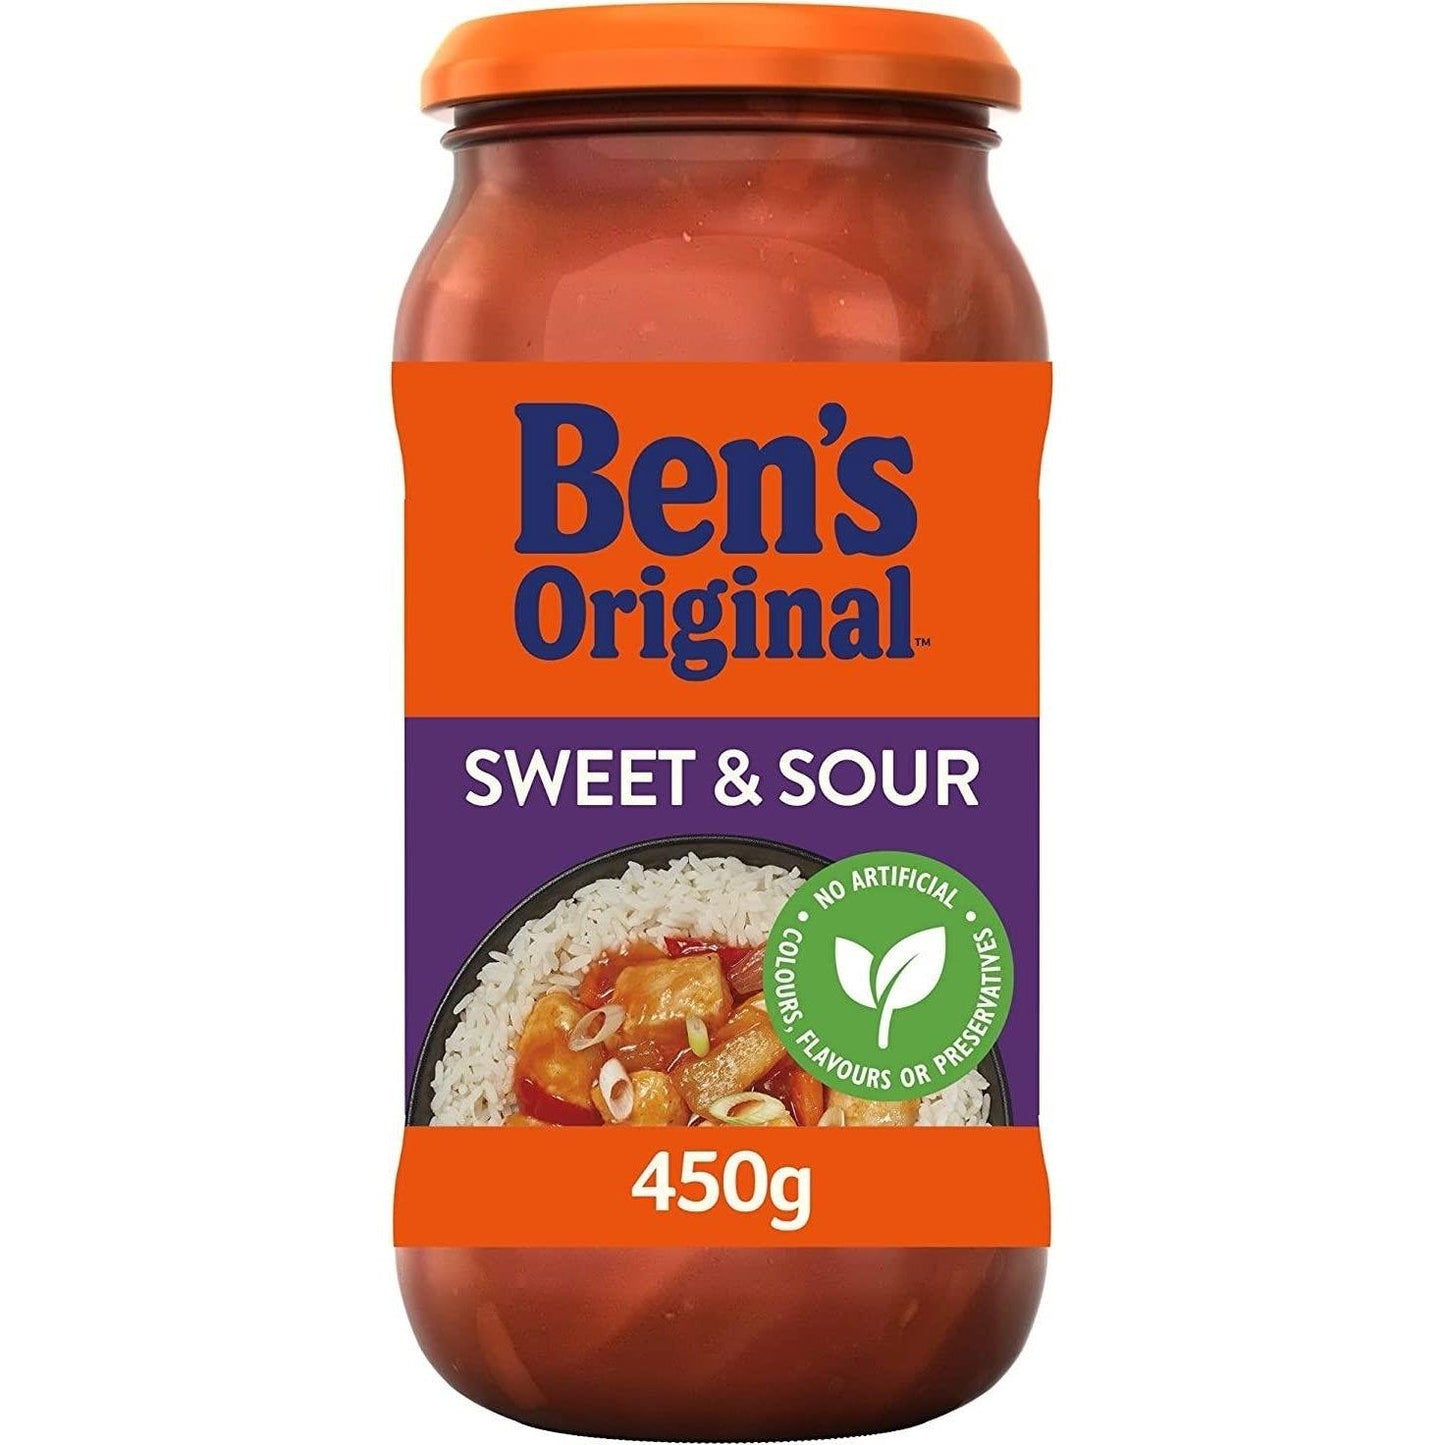 Ben's Original Sweet & Sour Sauce Jar 450g